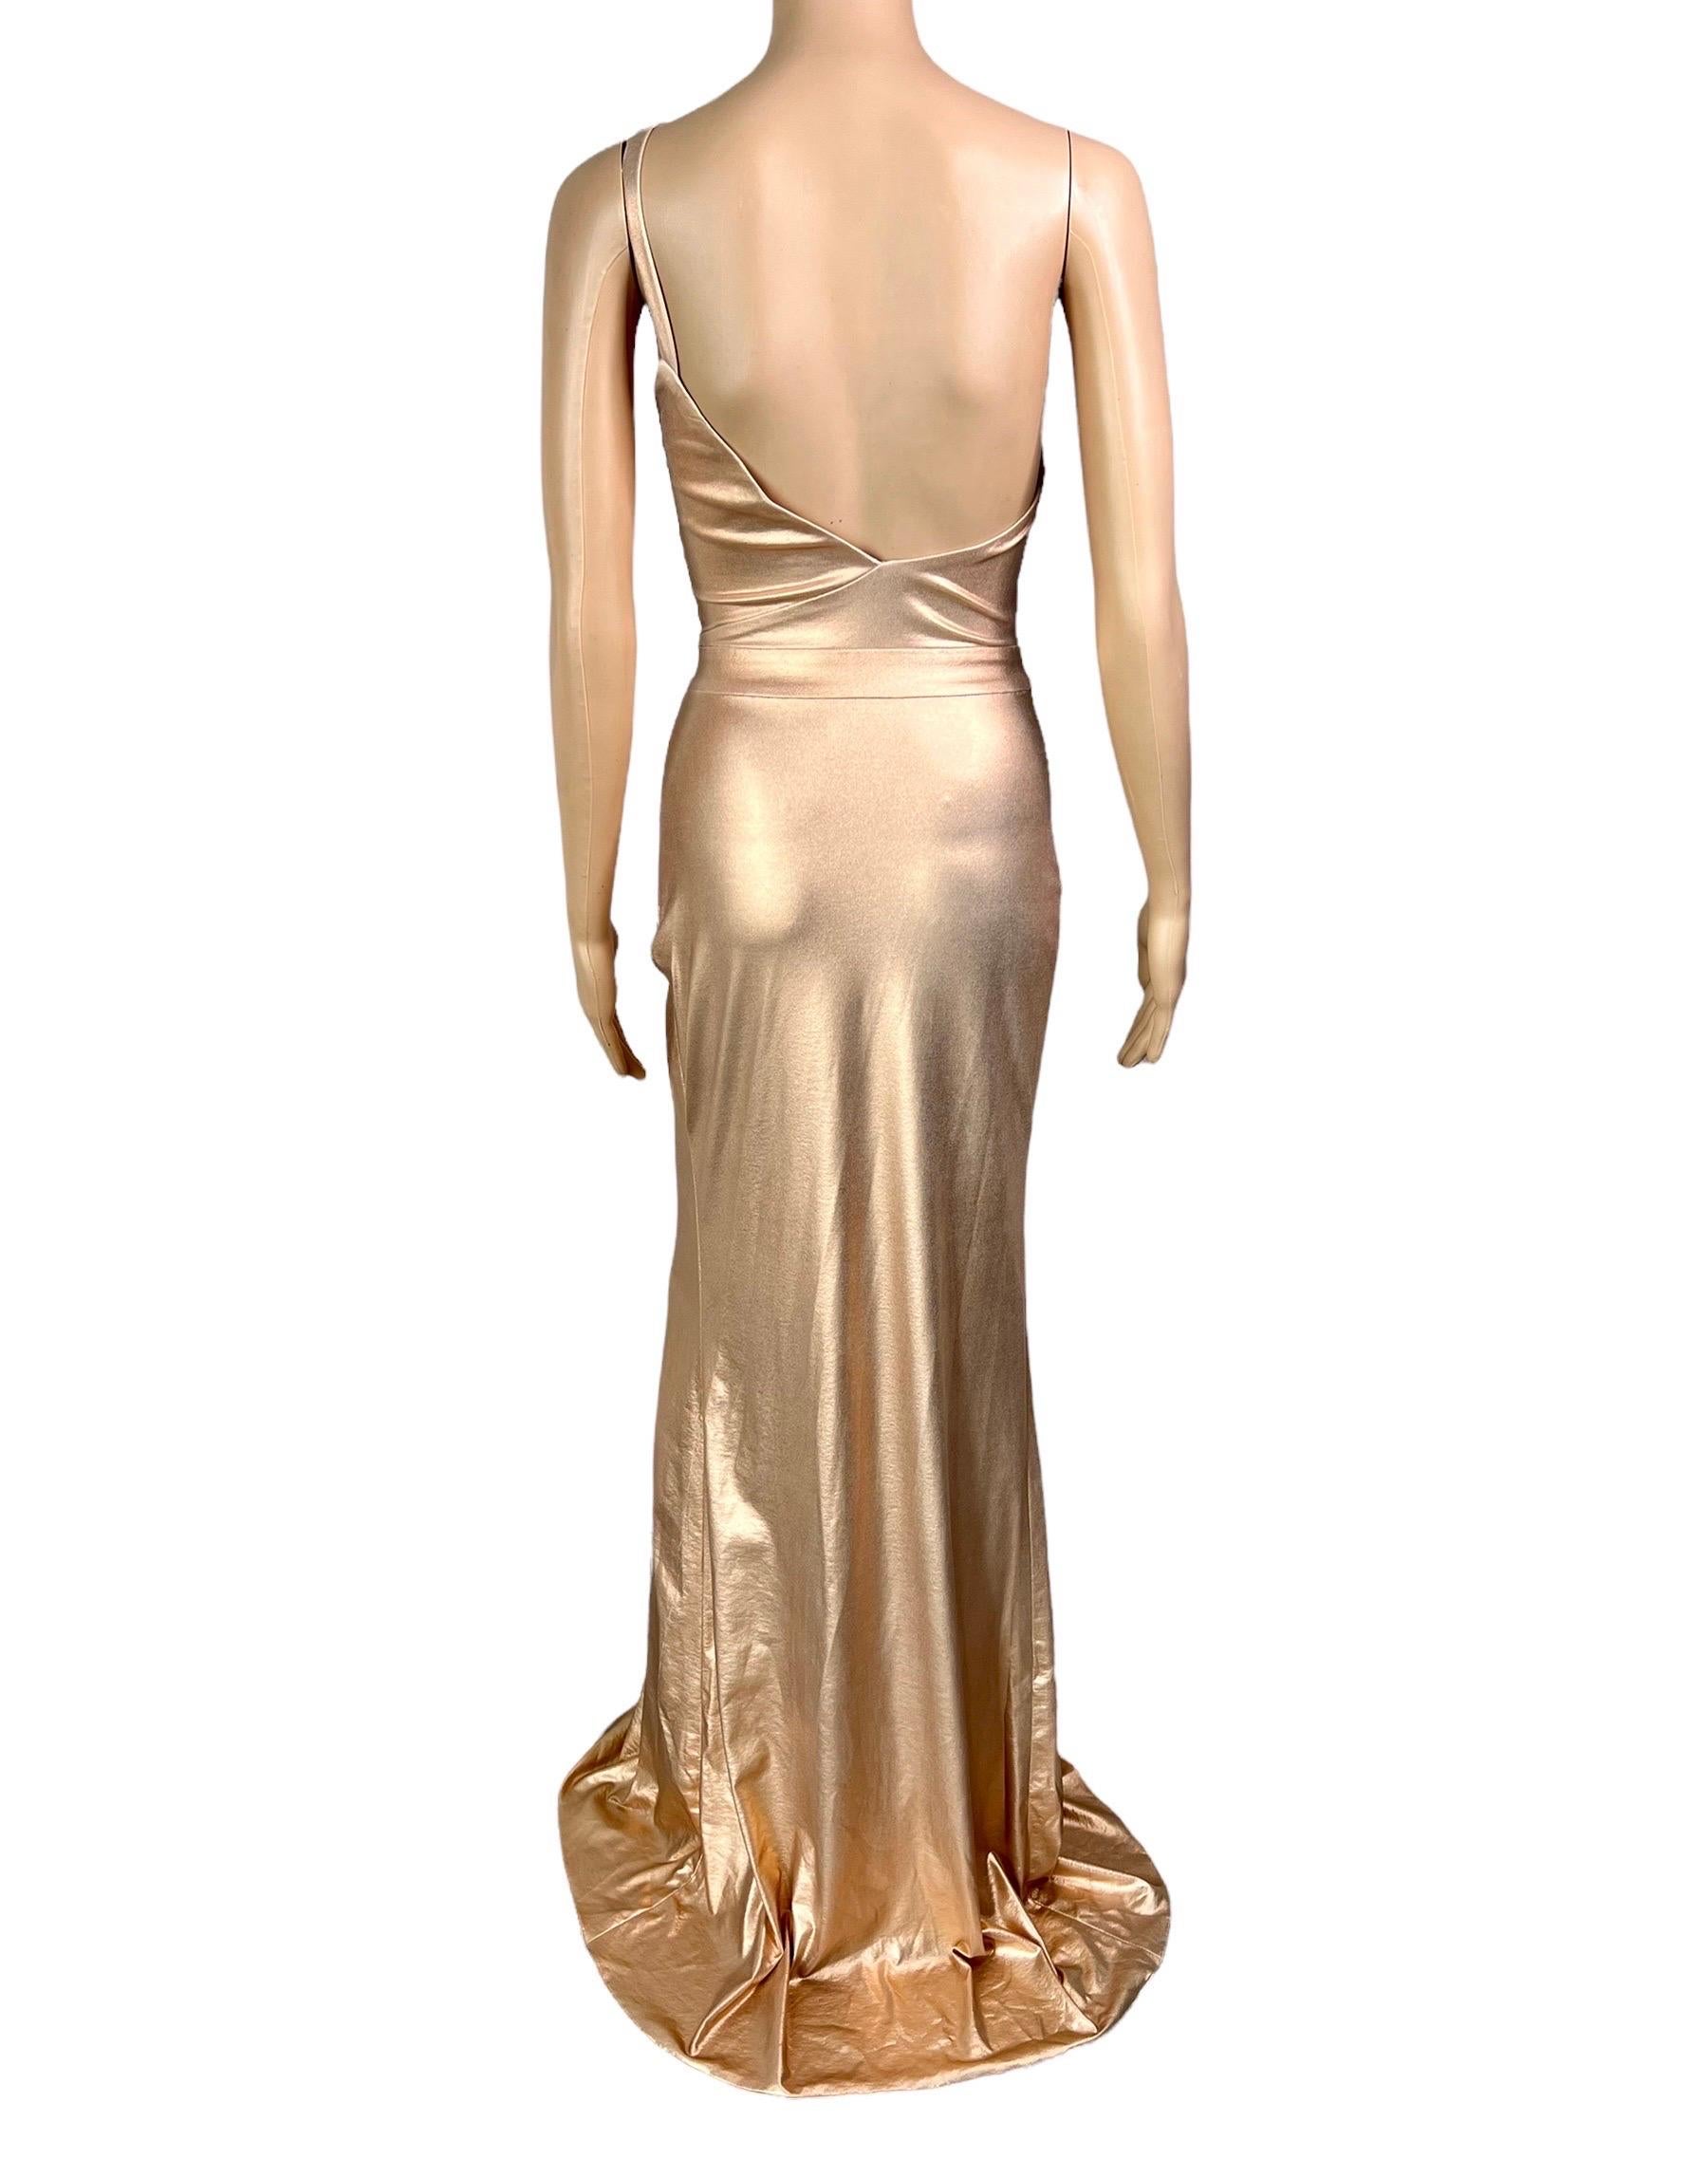 Versace c.2013 Wet Liquid Look Bodycon Metallic Rose Gold Evening Dress Gown For Sale 12